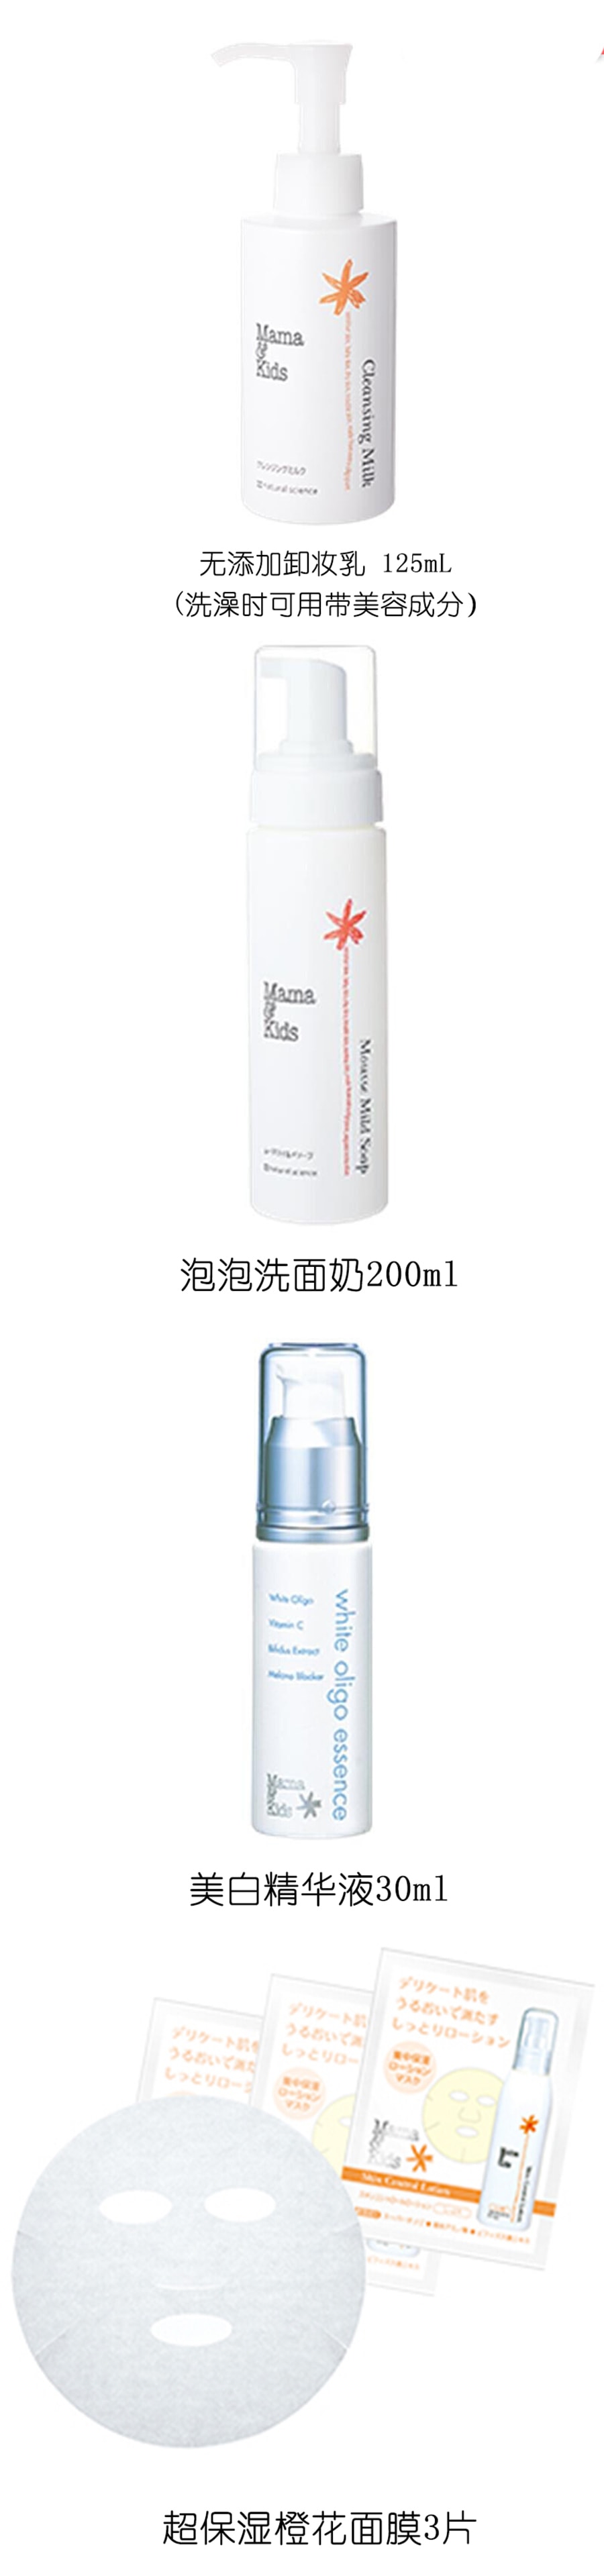 【日本直邮】日本MAMAKIDS 孕妇产妇专用保湿卸妆乳液125ml(部分包装盒较旧介意慎拍)